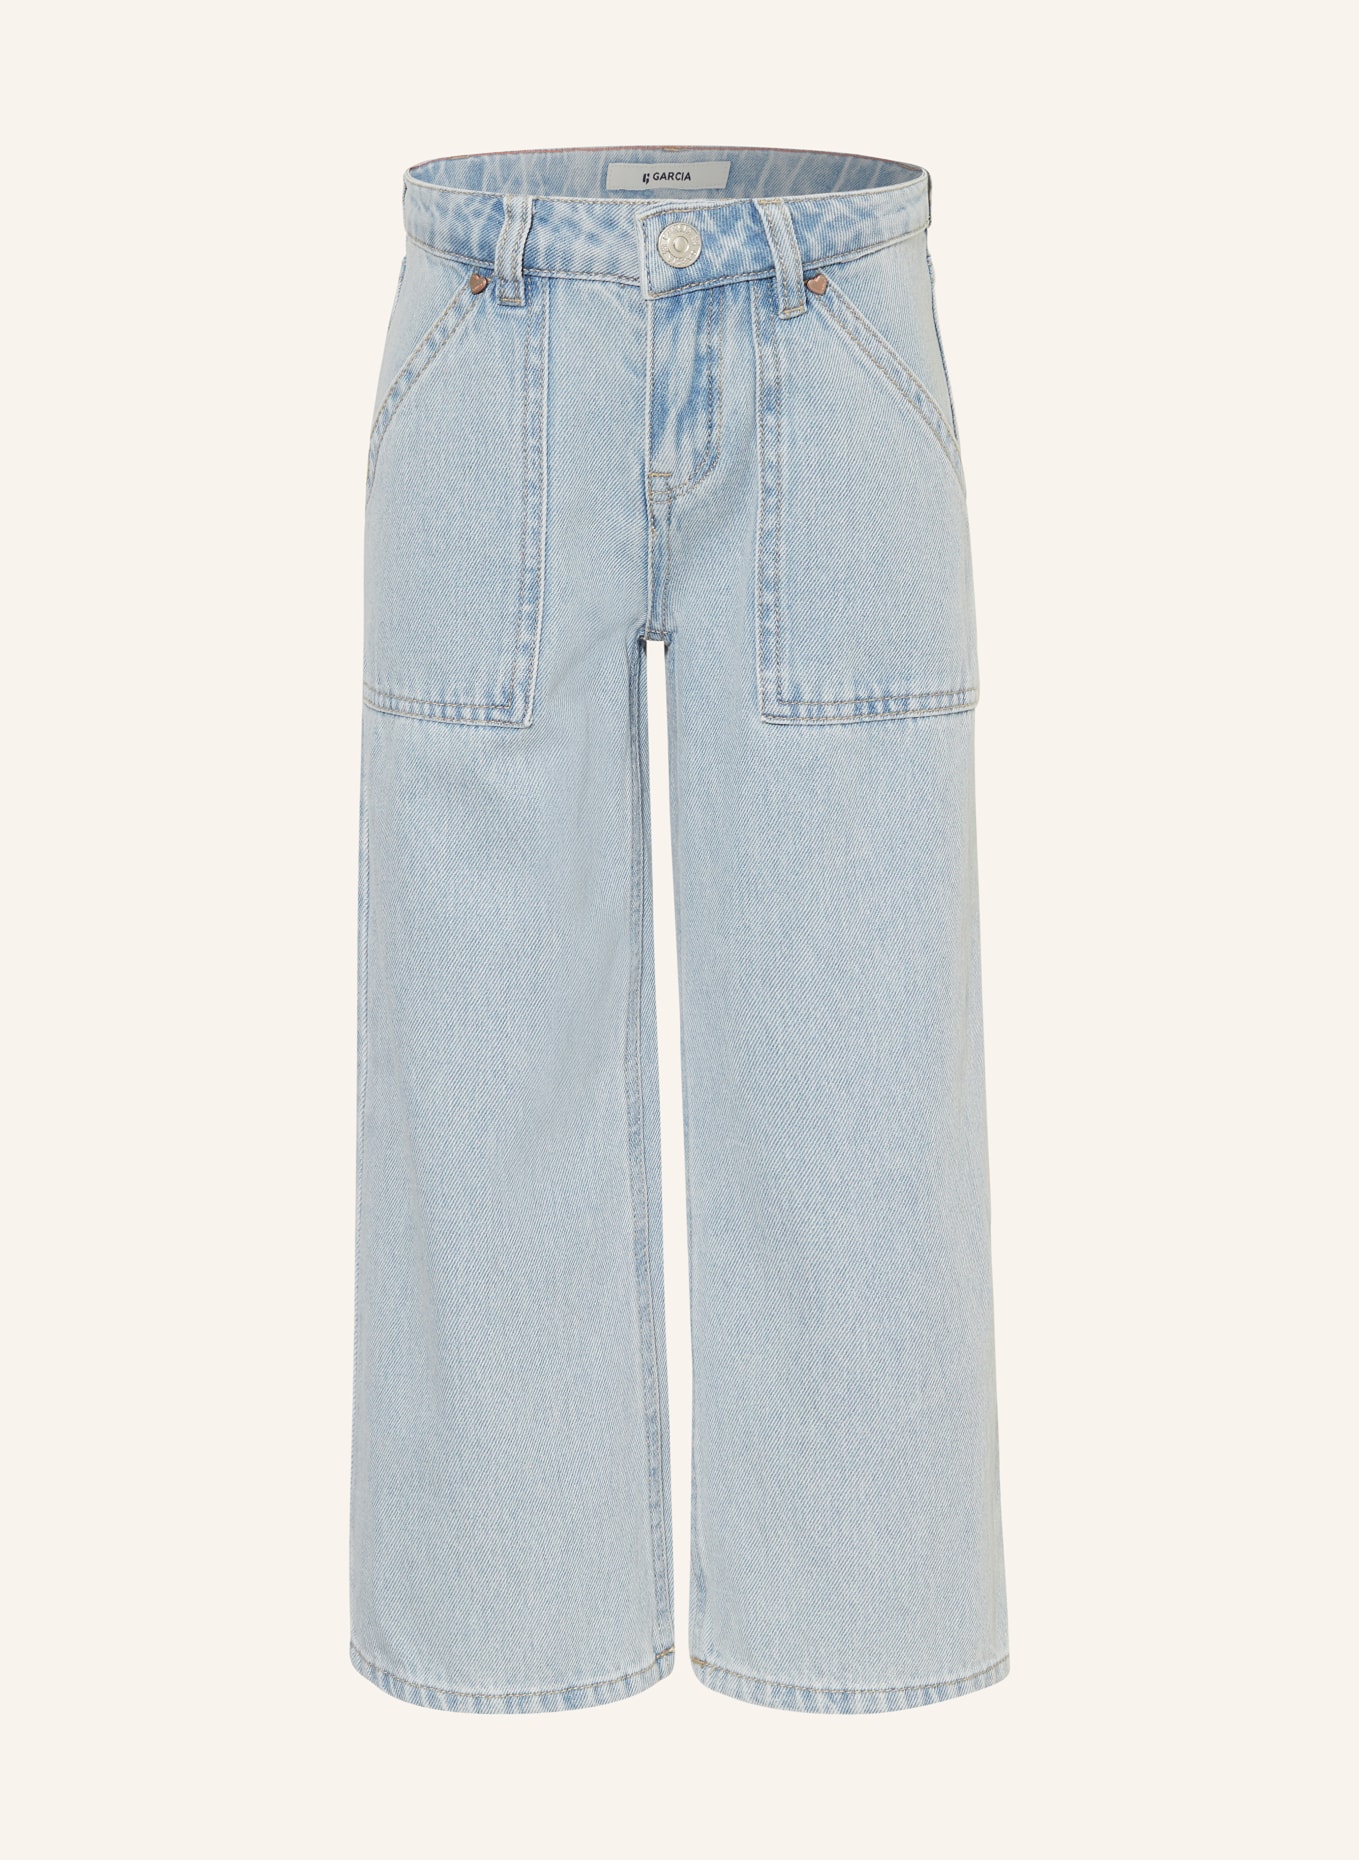 GARCIA Jeans-Culotte, Farbe: 5790 bleached (Bild 1)